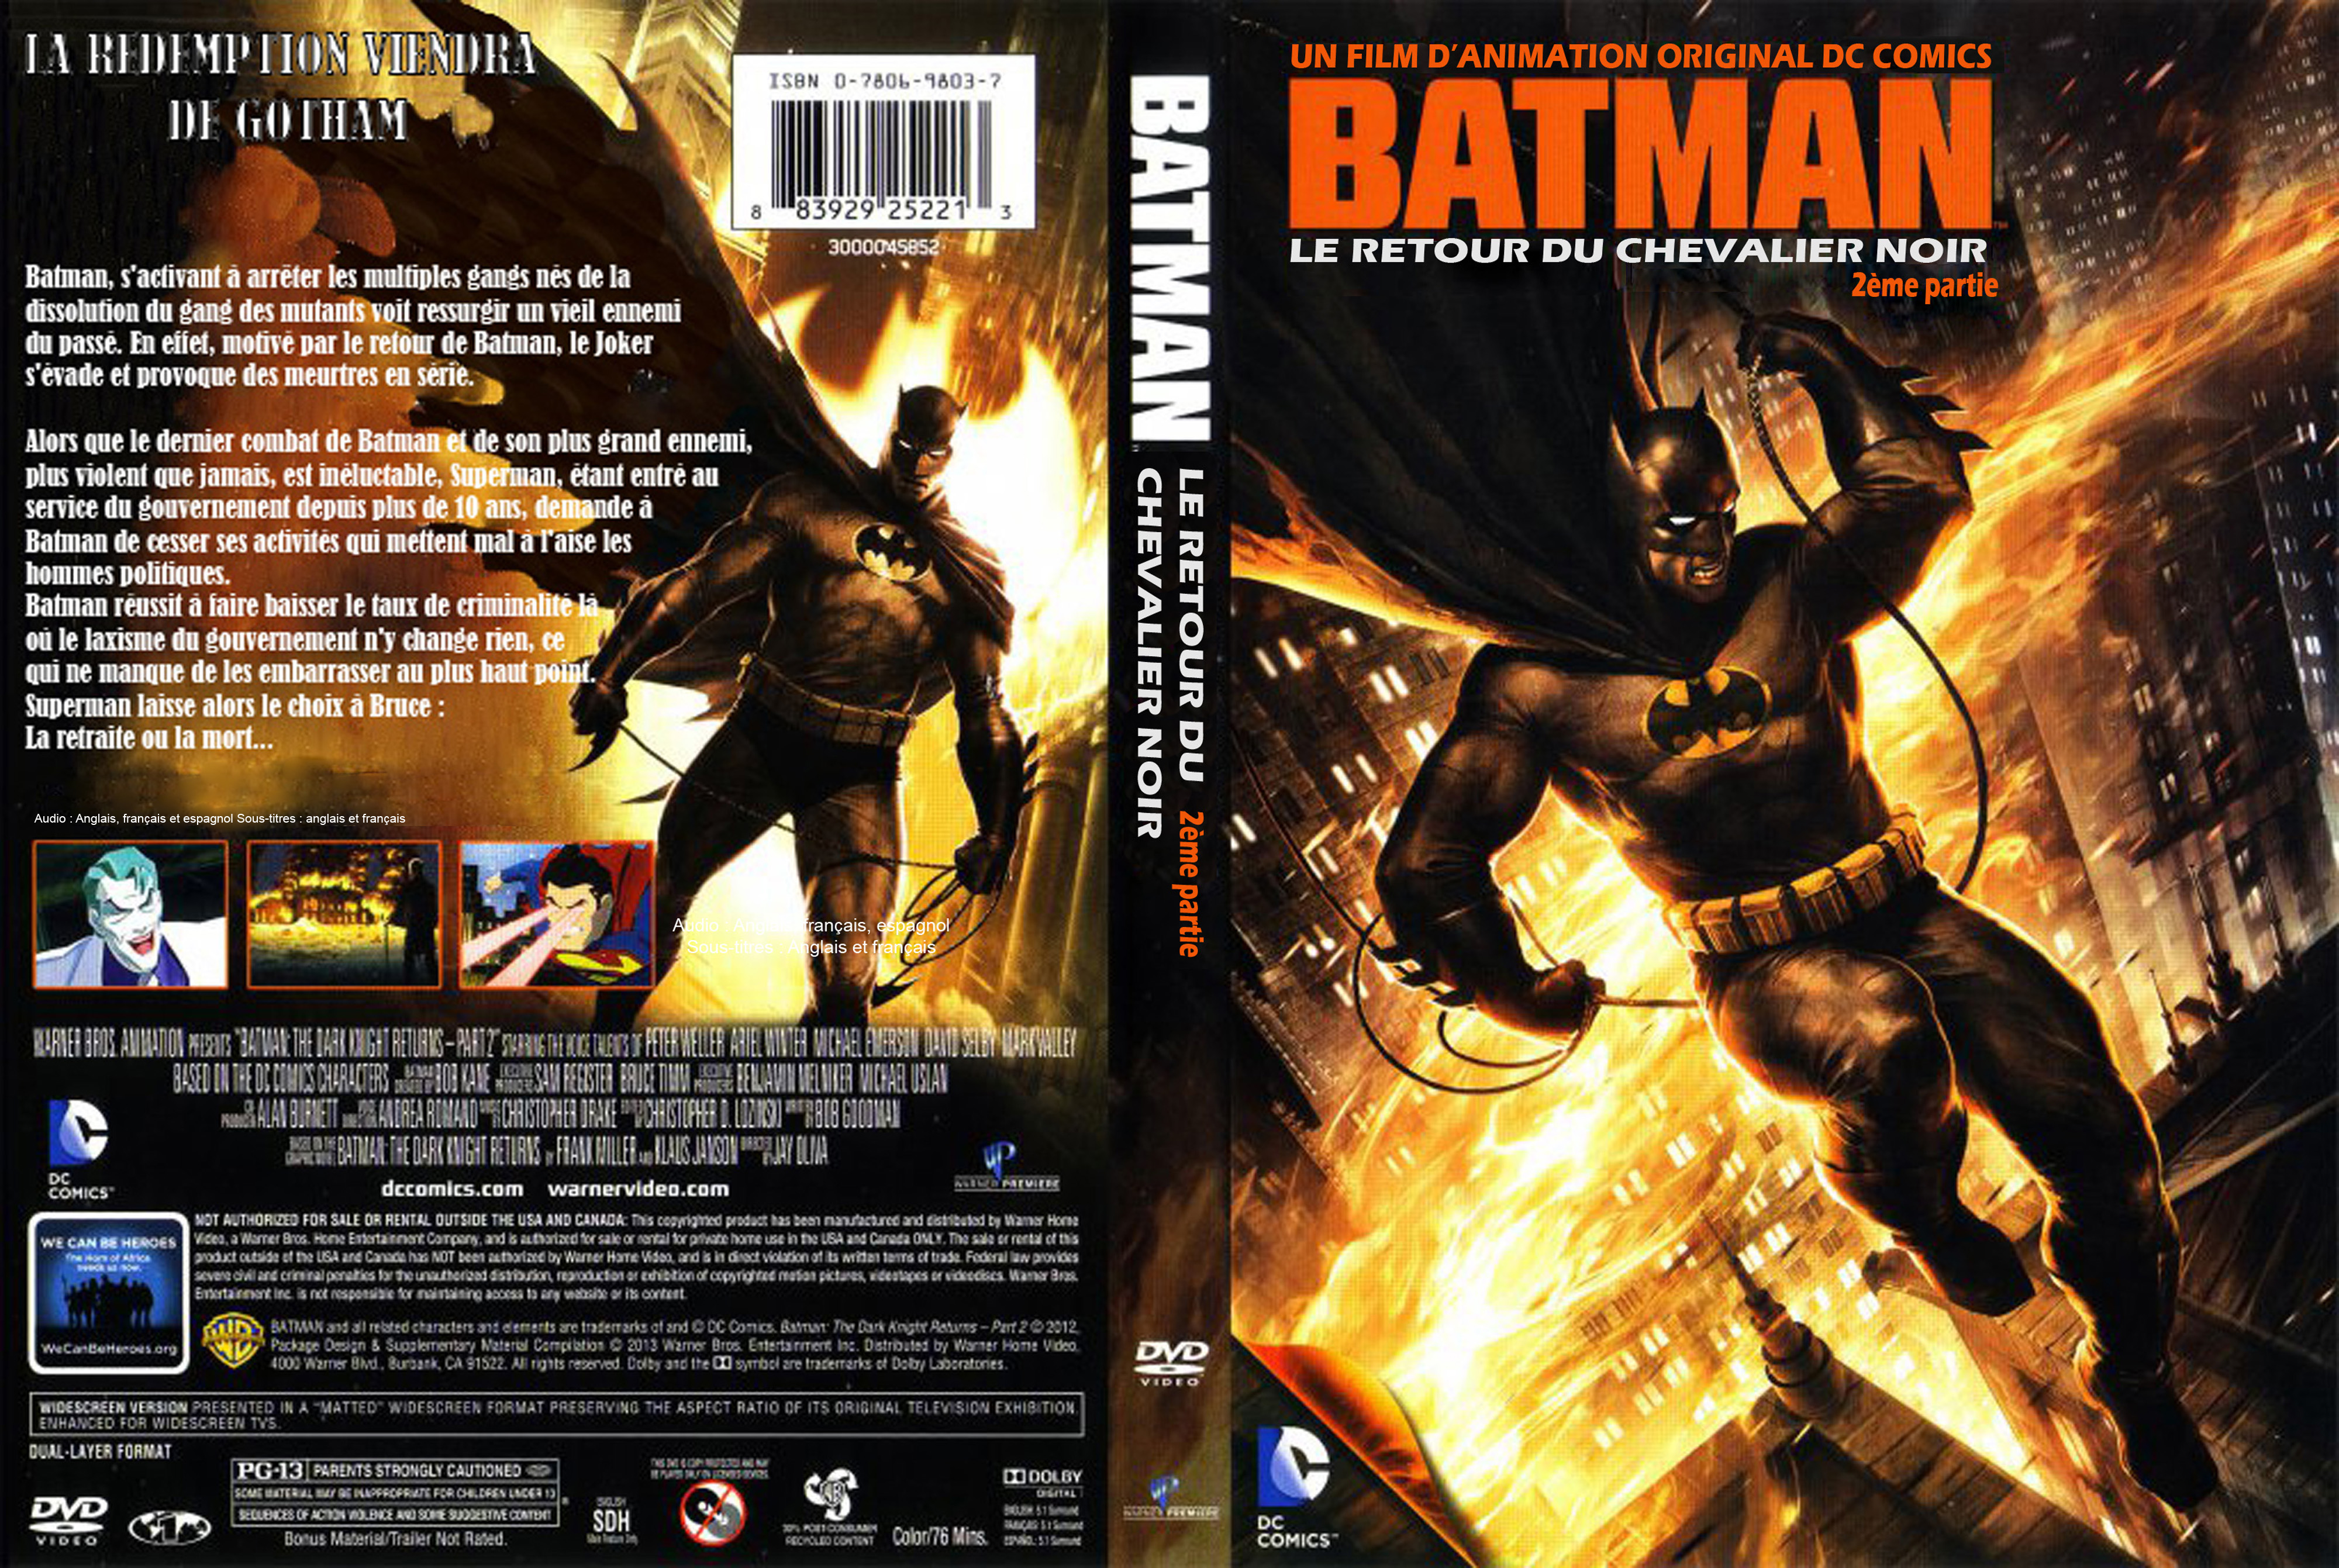 Jaquette DVD Batman Le retour du chevalier noir partie 2 custom